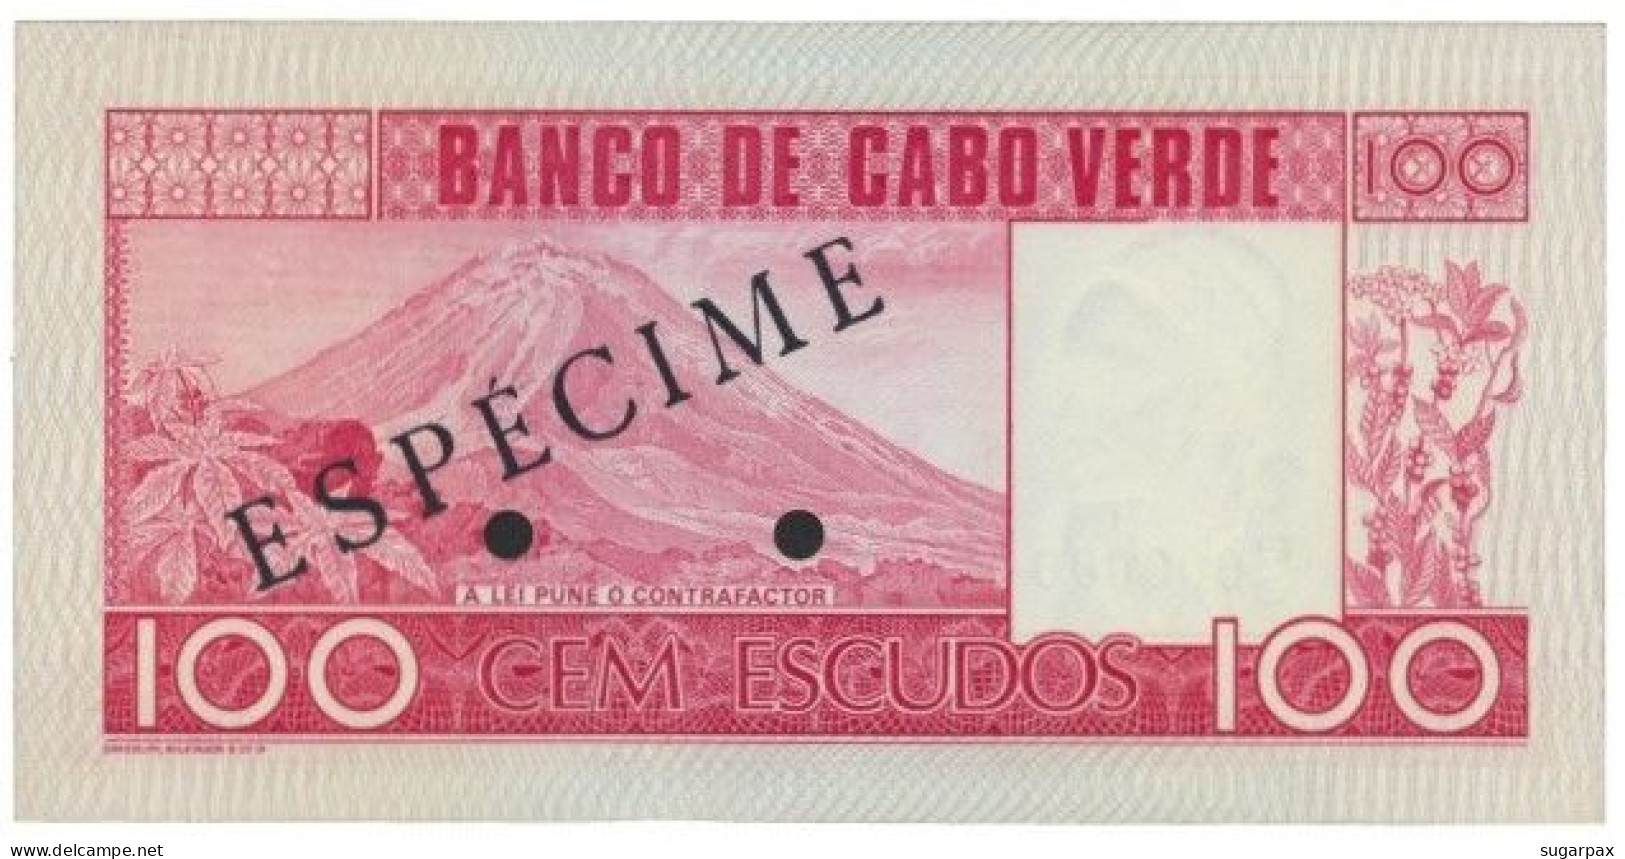 CAPE VERDE - 100 ESCUDOS - 20.01.1977 - Pick 54.s2 - Unc. - ESPÉCIME In BLACK - Cap Verde